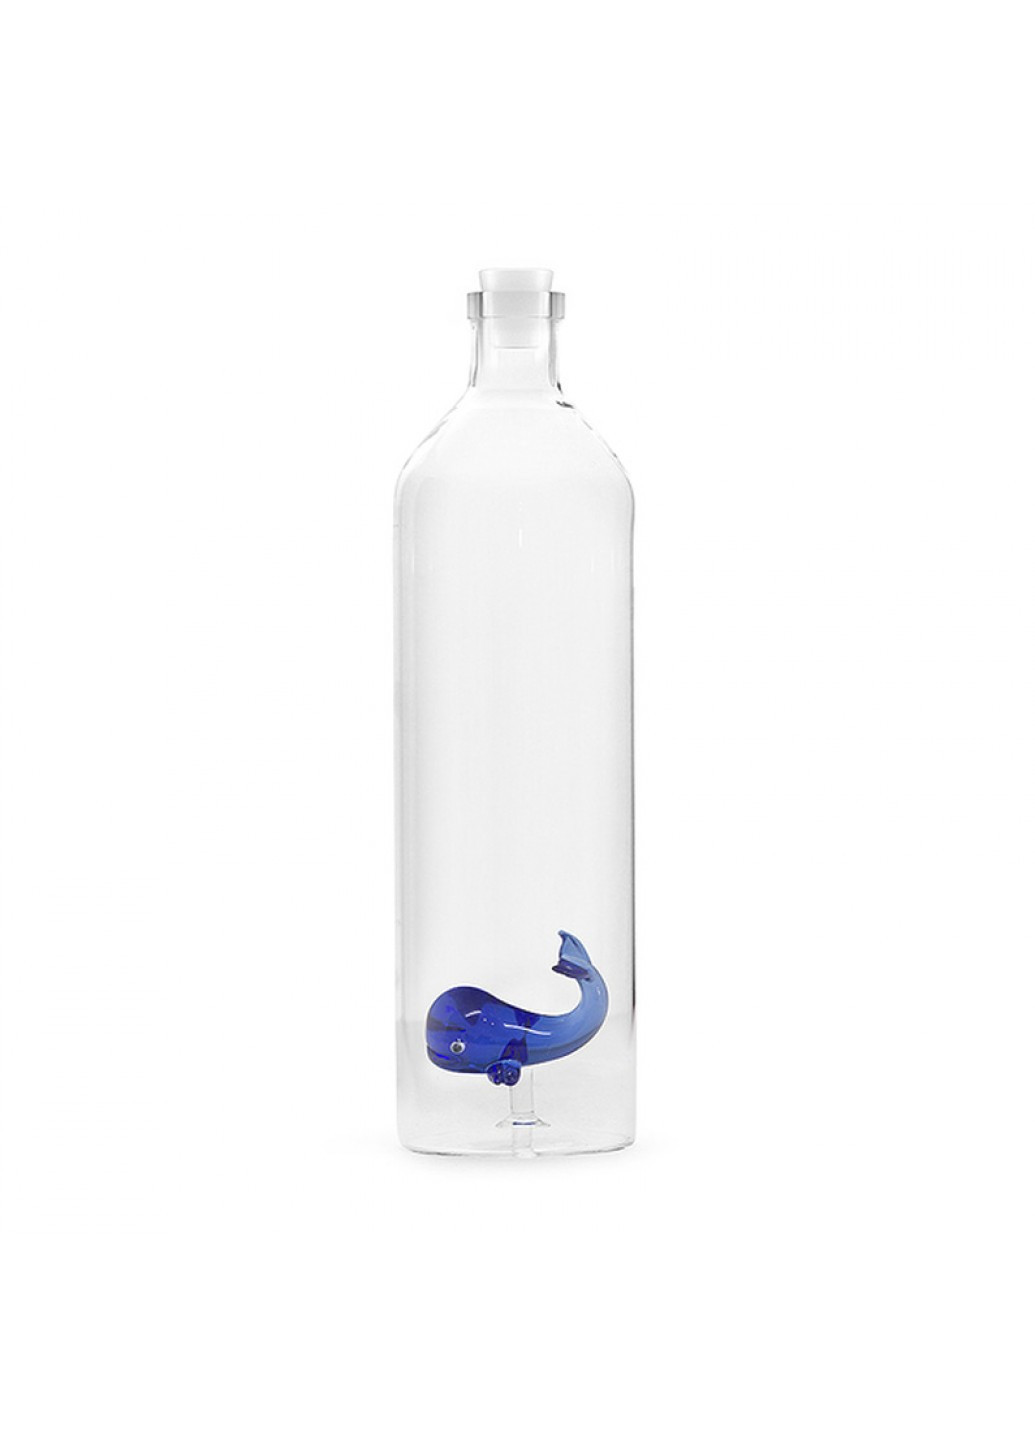 Бутылка Blue Whale из боросиликатного стекла Balvi 26758.0 (216454294)